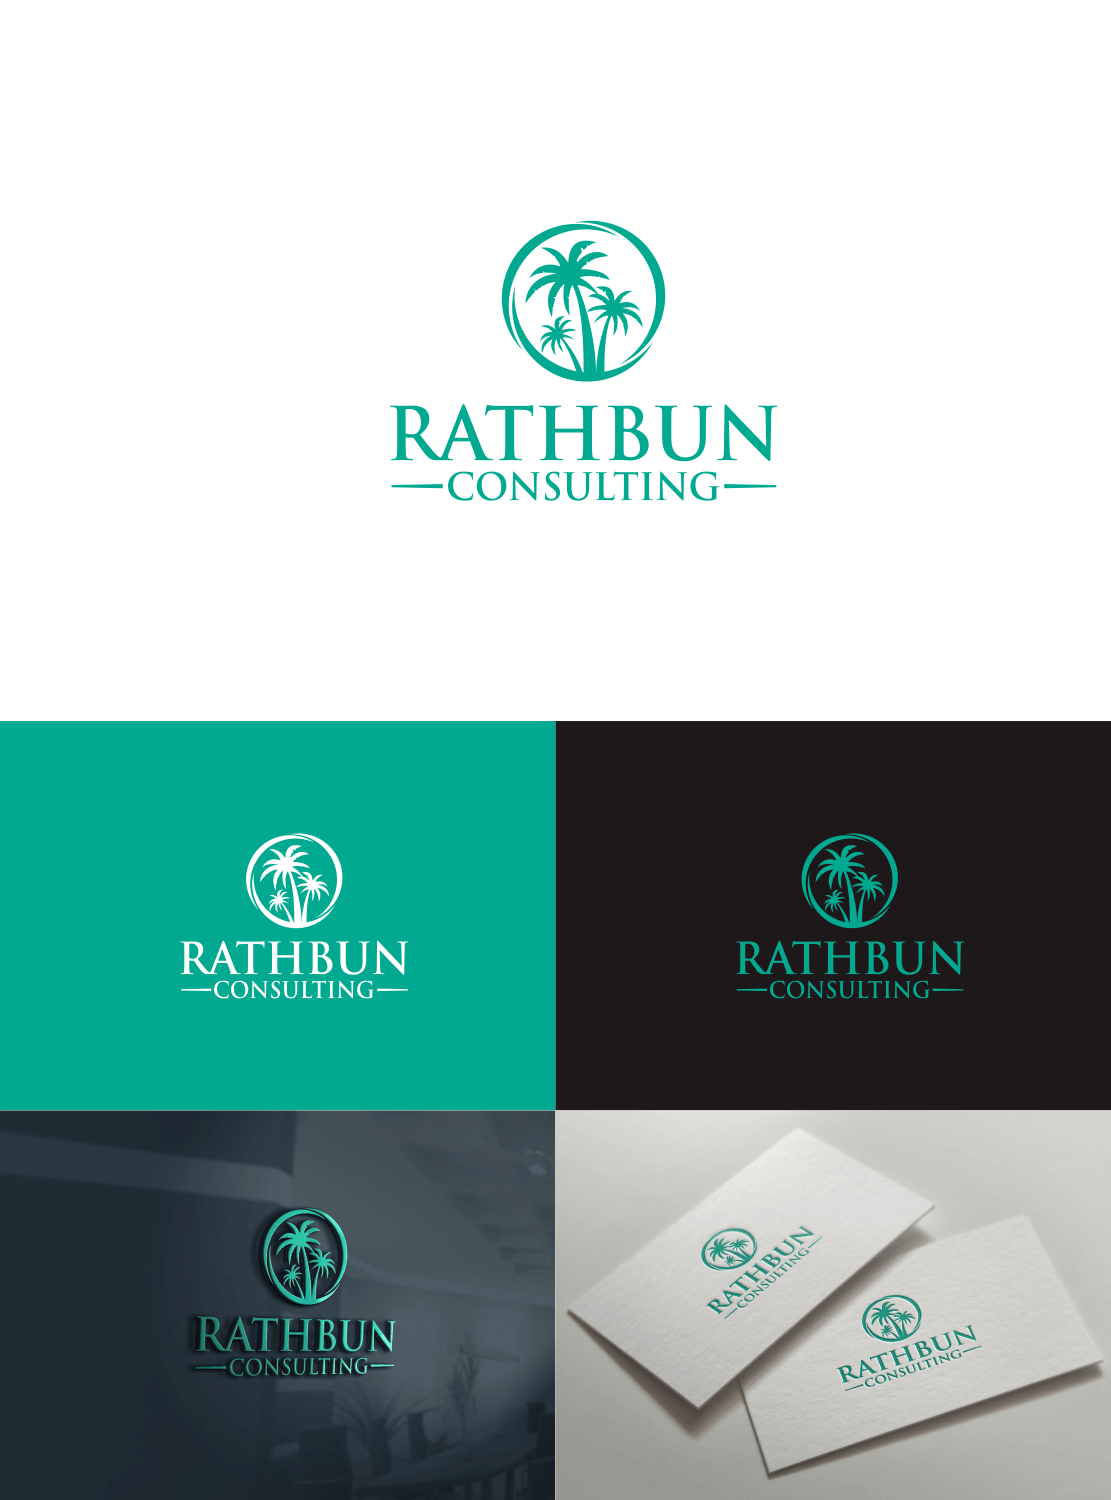 Consulting Logo - Serious, Elegant, Management Consulting Logo Design for Rathbun ...